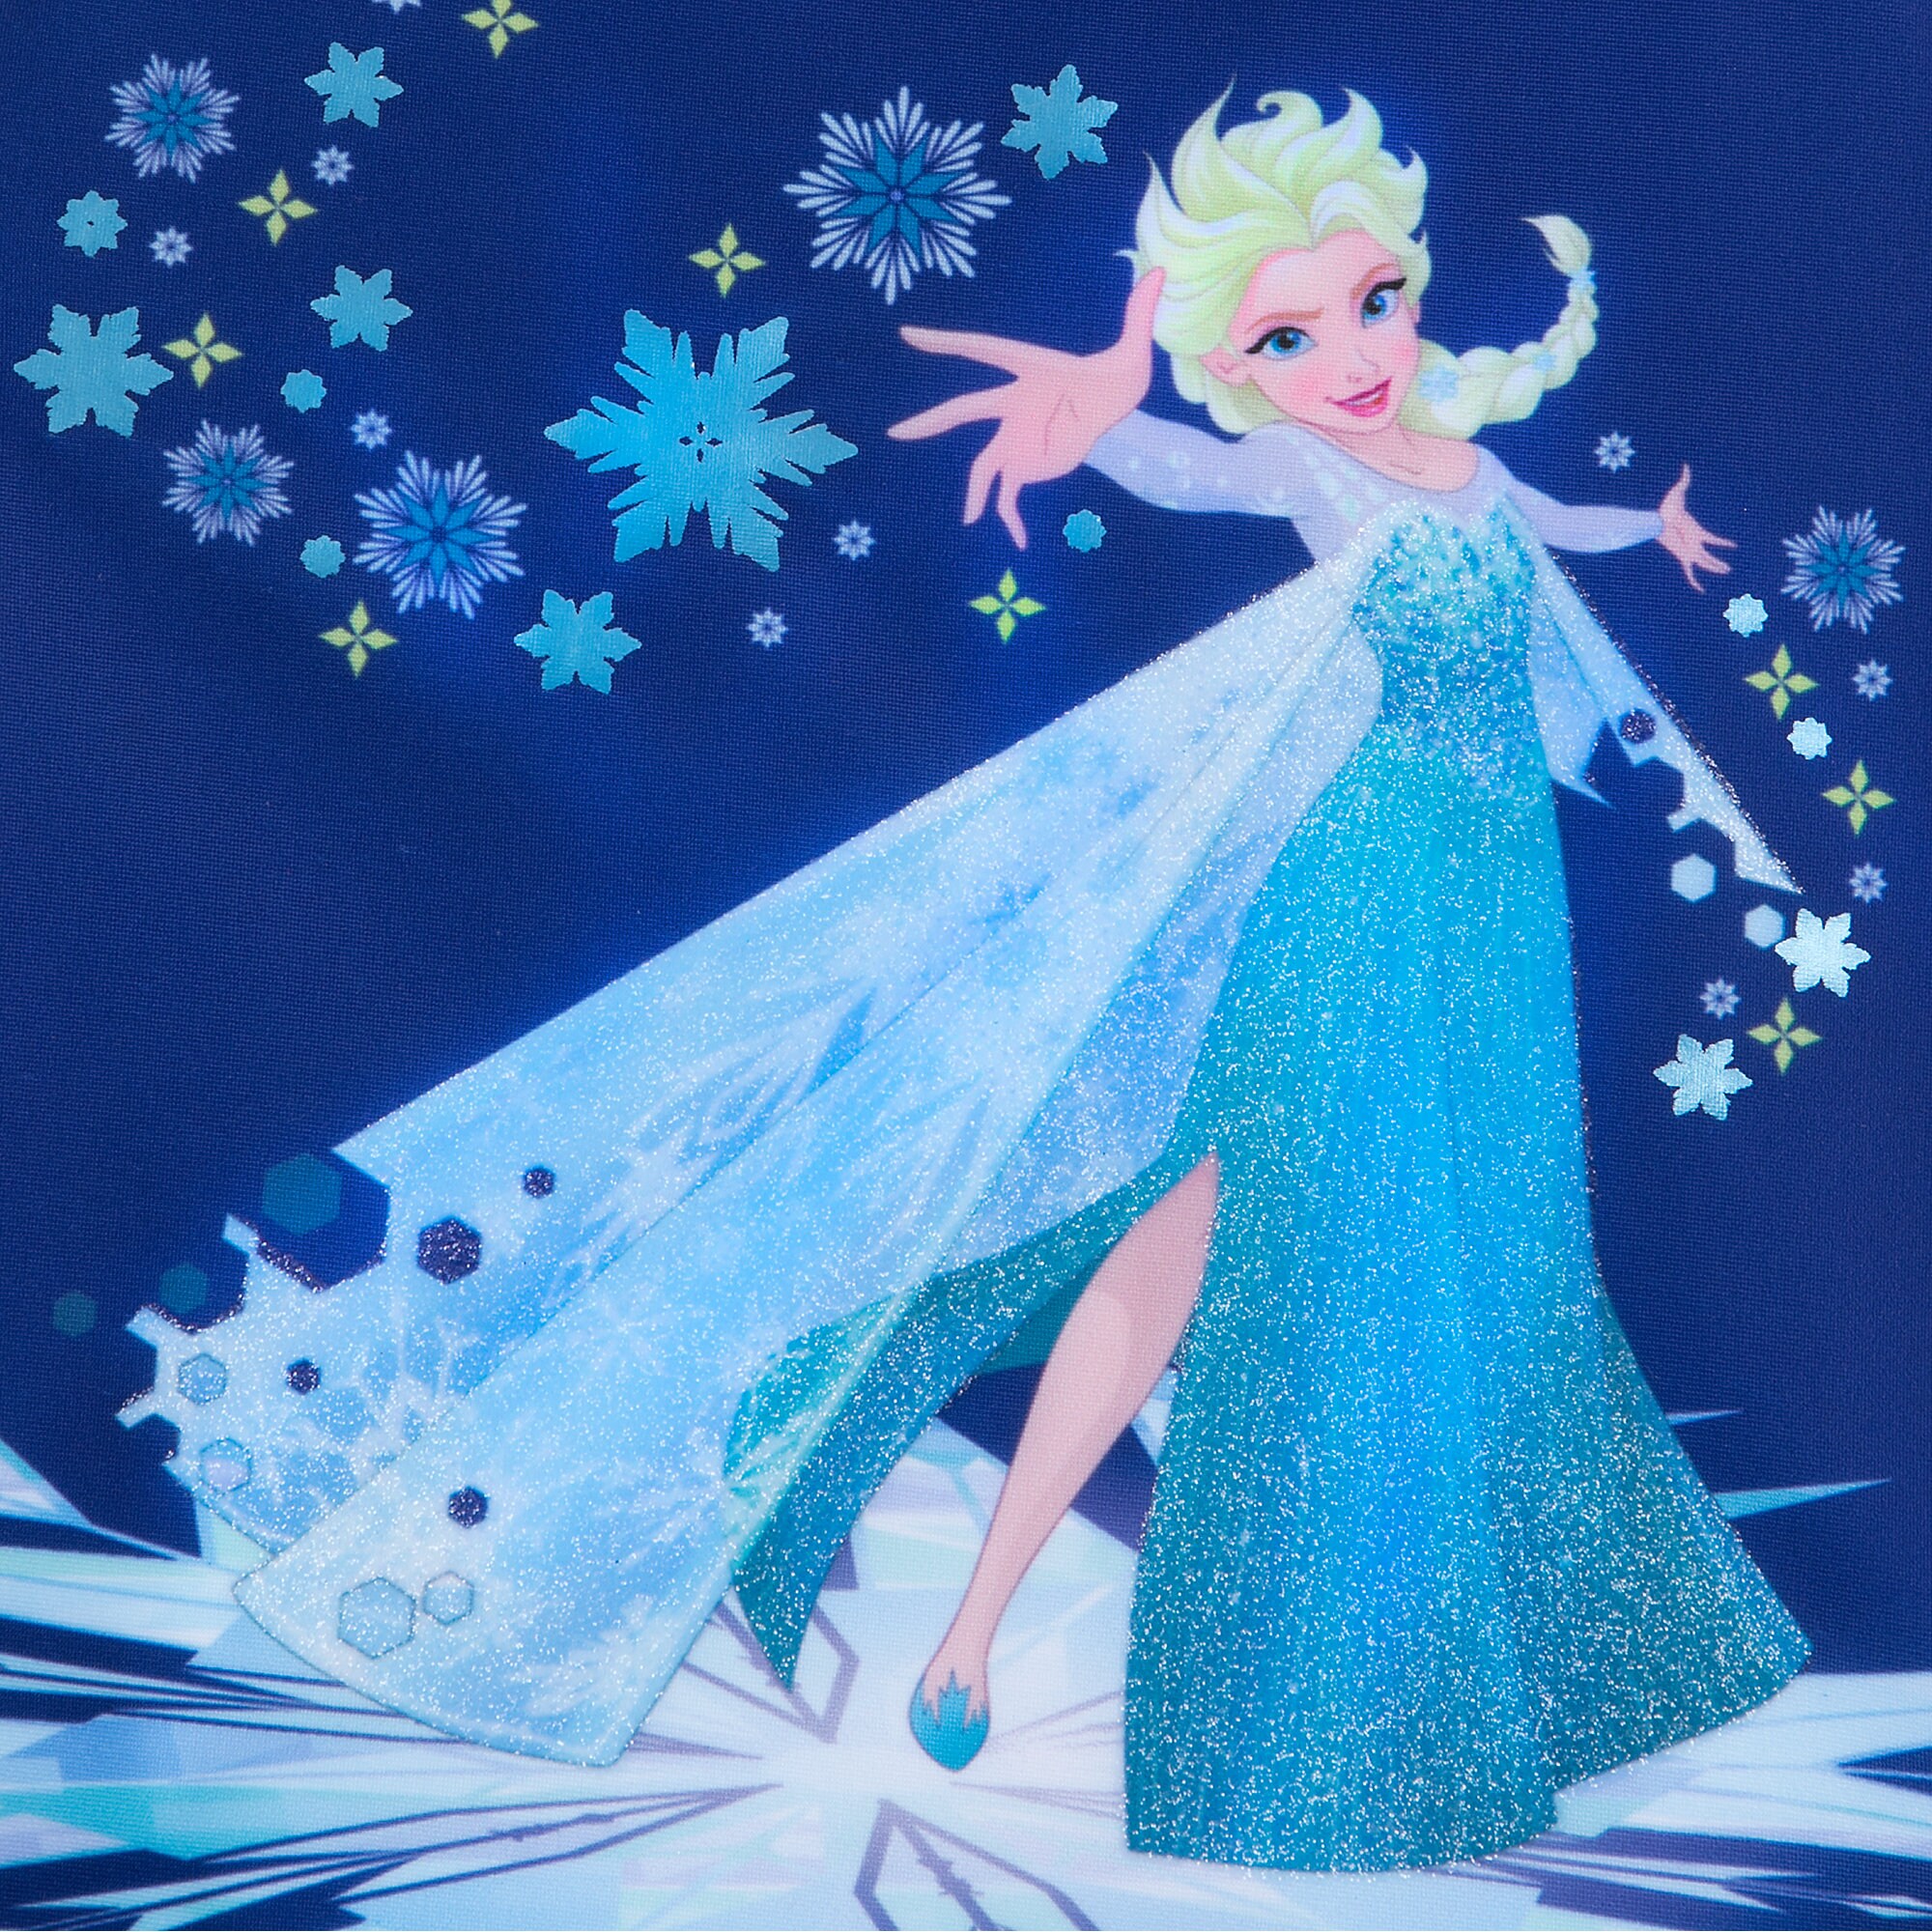 Elsa Swimsuit for Kids - Frozen